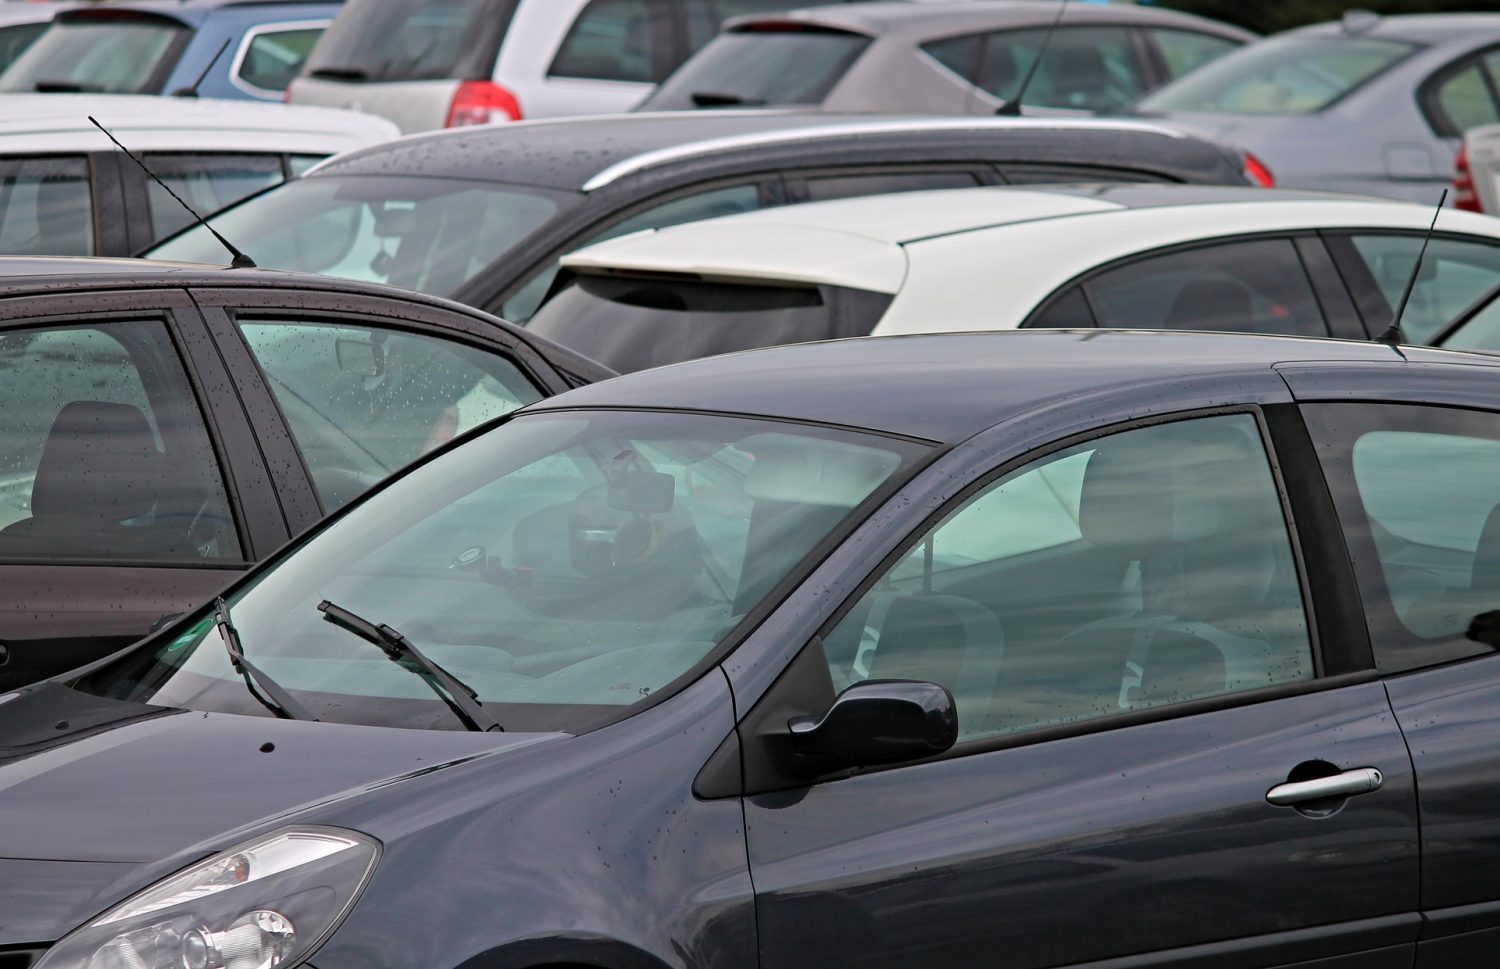 Sprzedaż samochodu w skupie aut - co warto wiedzieć?